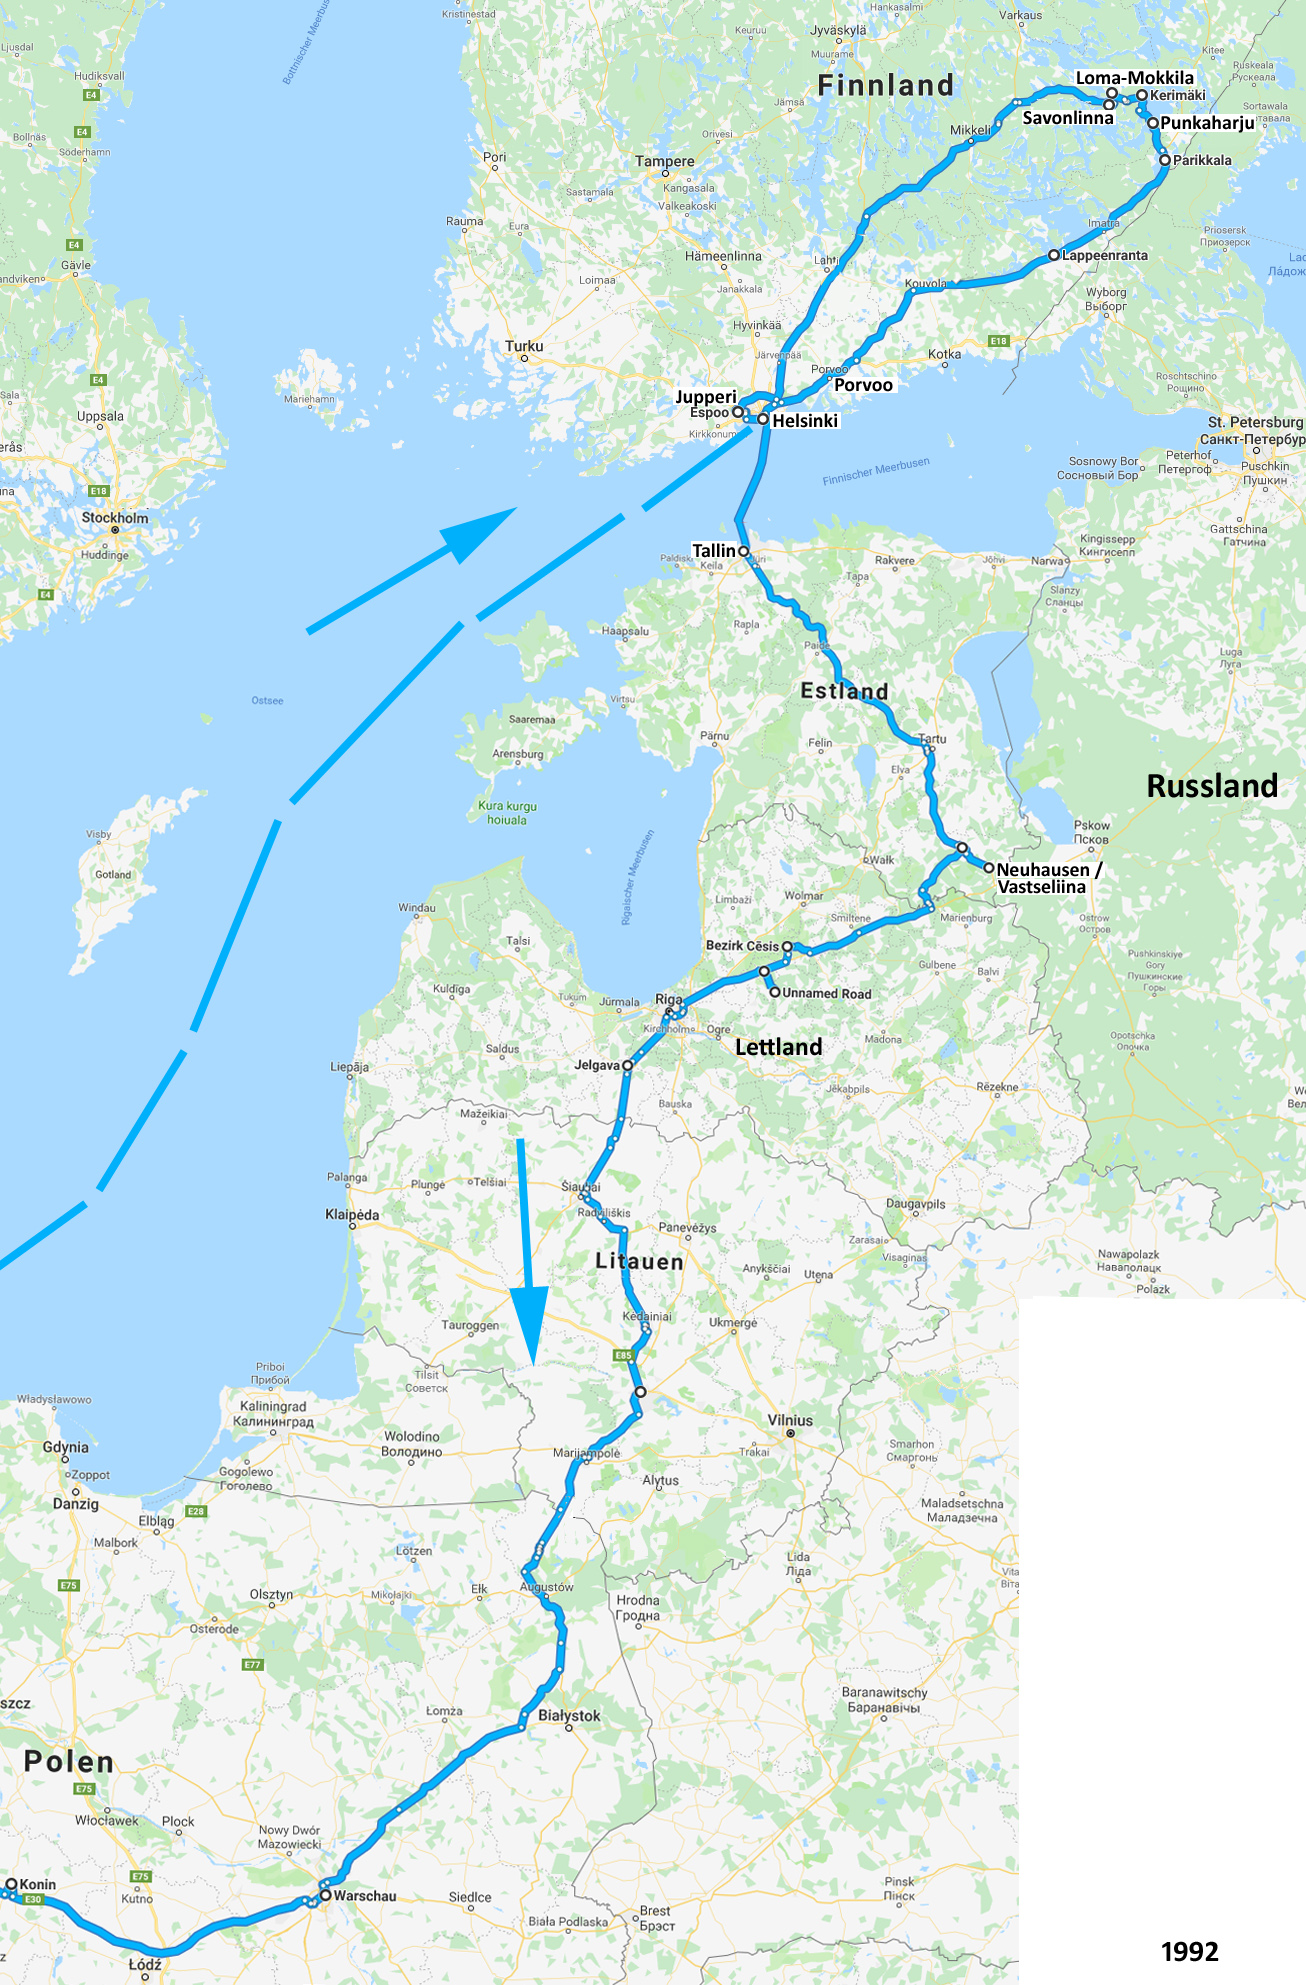 Route Finnland - Baltische Staaten